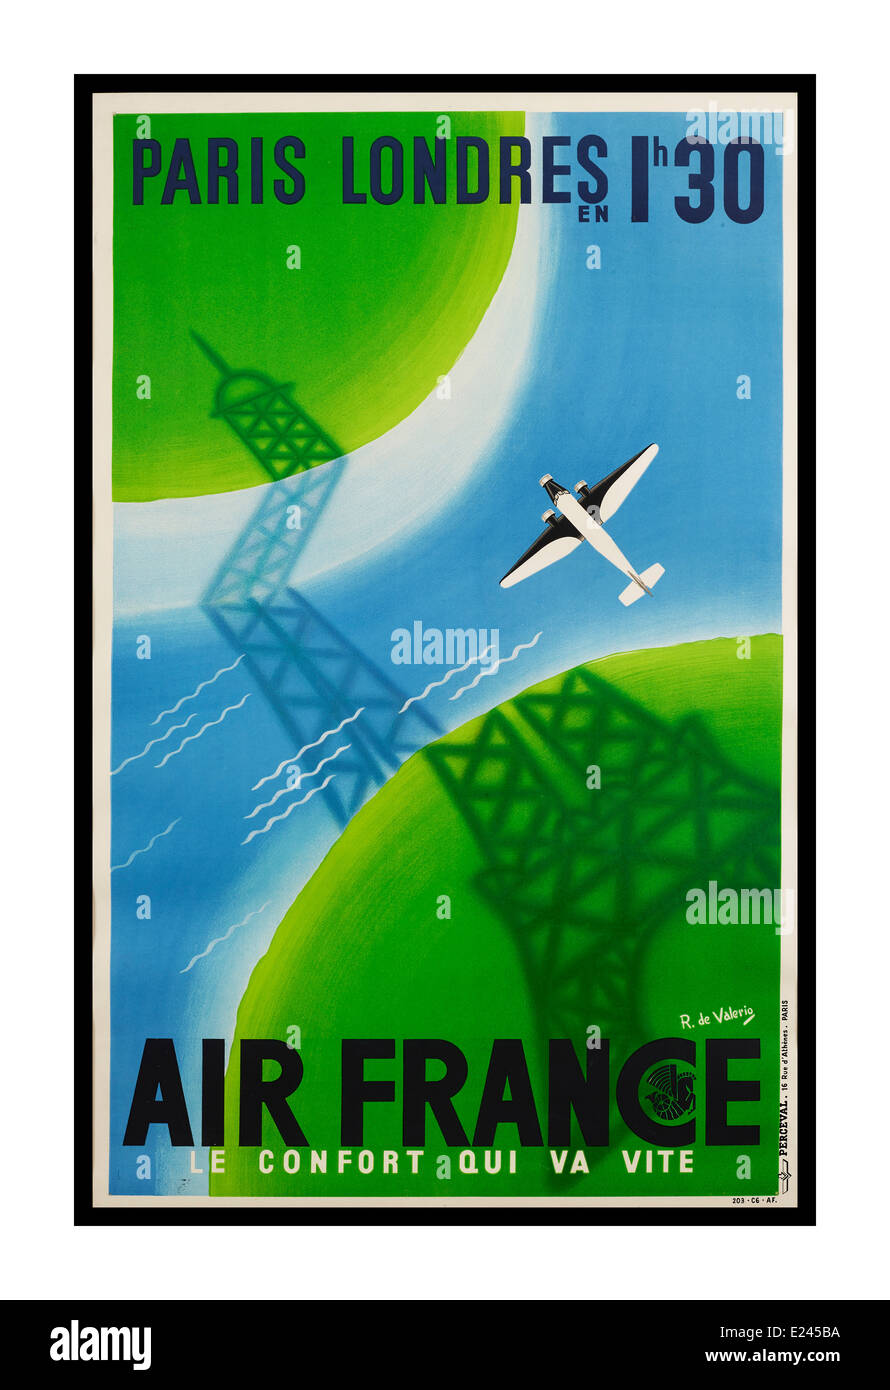 Vintage Air France Reisen Plakat Förderung Flug von Paris nach London in 1 Stunde 30 Minuten Stockfoto